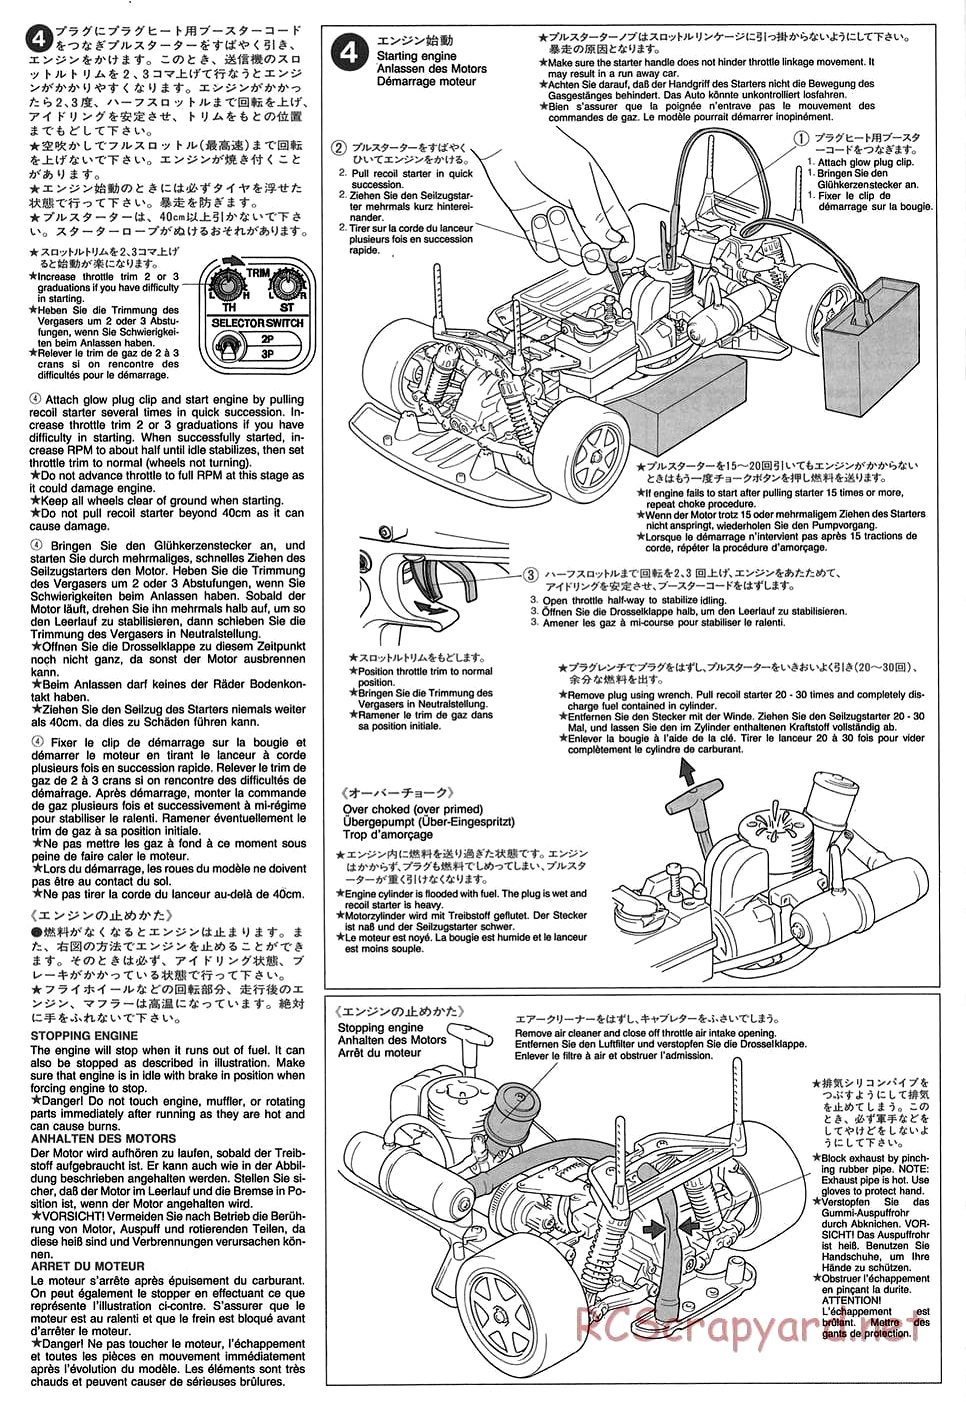 Tamiya - TGX Mk.1 Chassis - Manual - Page 21